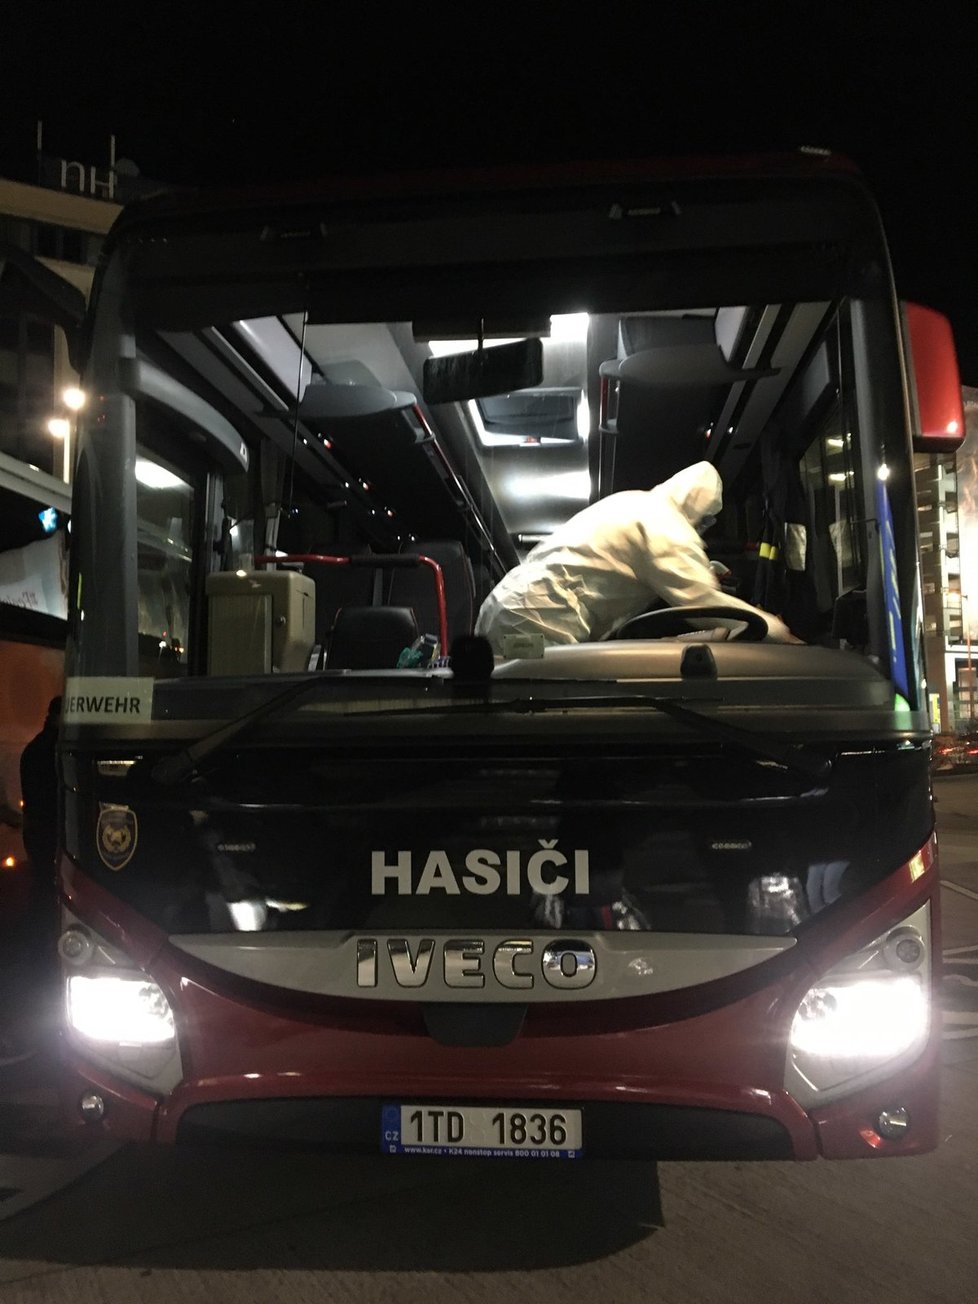 Jeden z autobusů poslalo ministerstvo zahraničí do rakouské Vídně, z letiště odvezl čtyři desítky turistů. (15.3.2020)